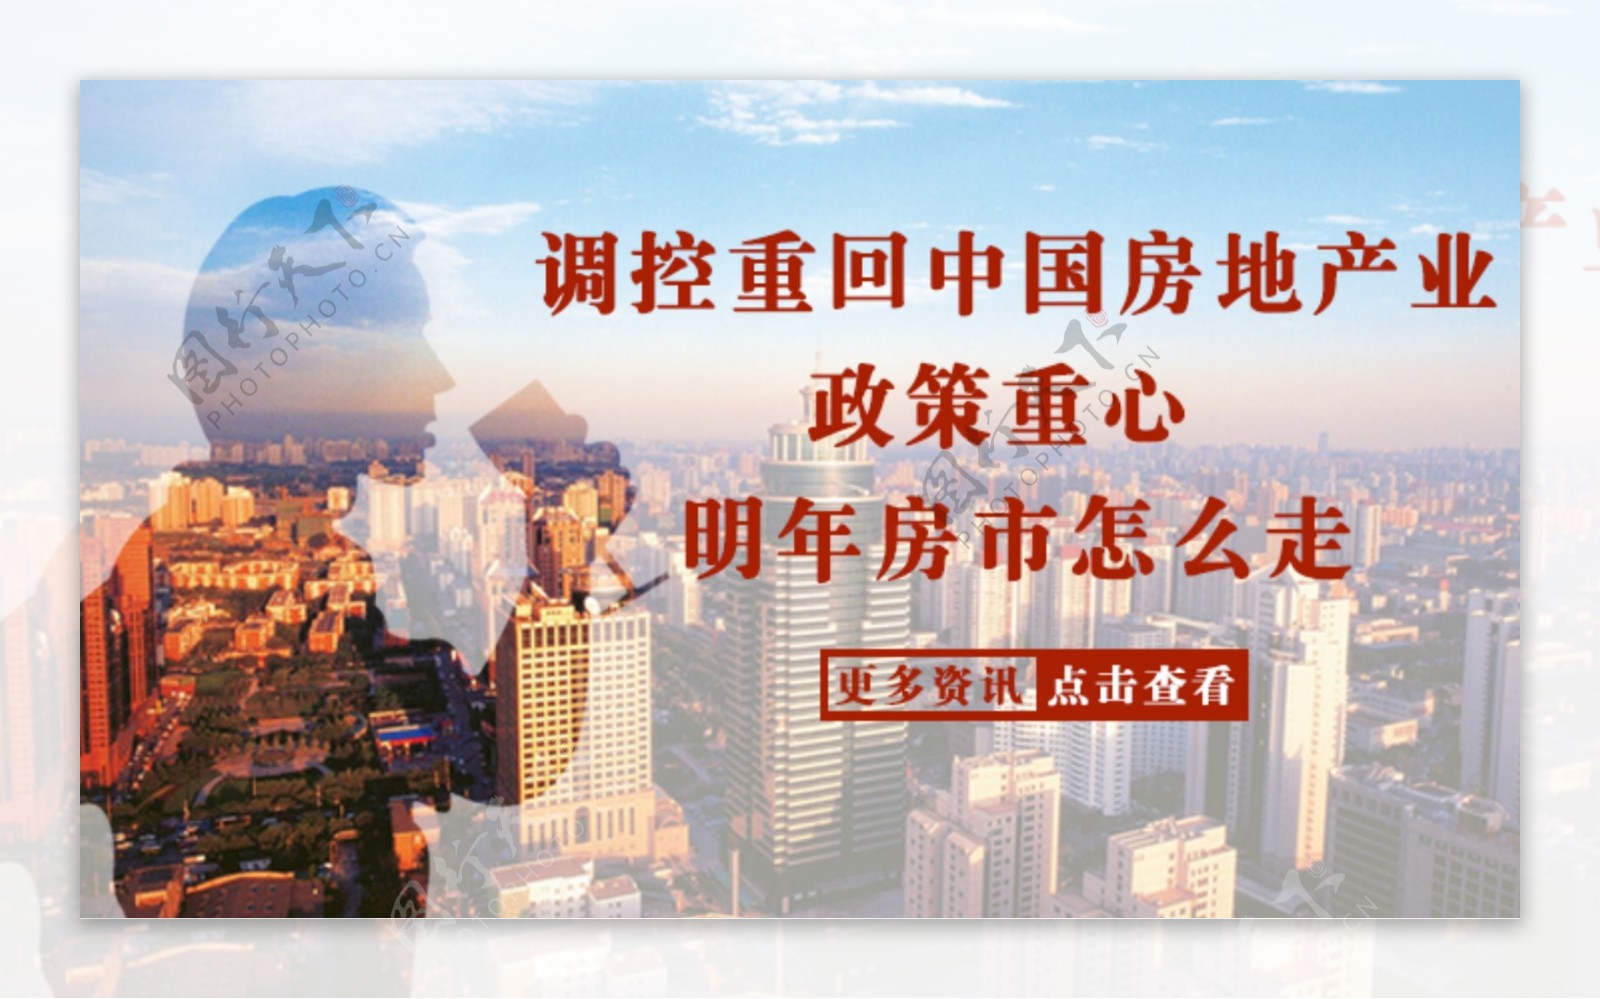 调控重回中国房地产业政策重心